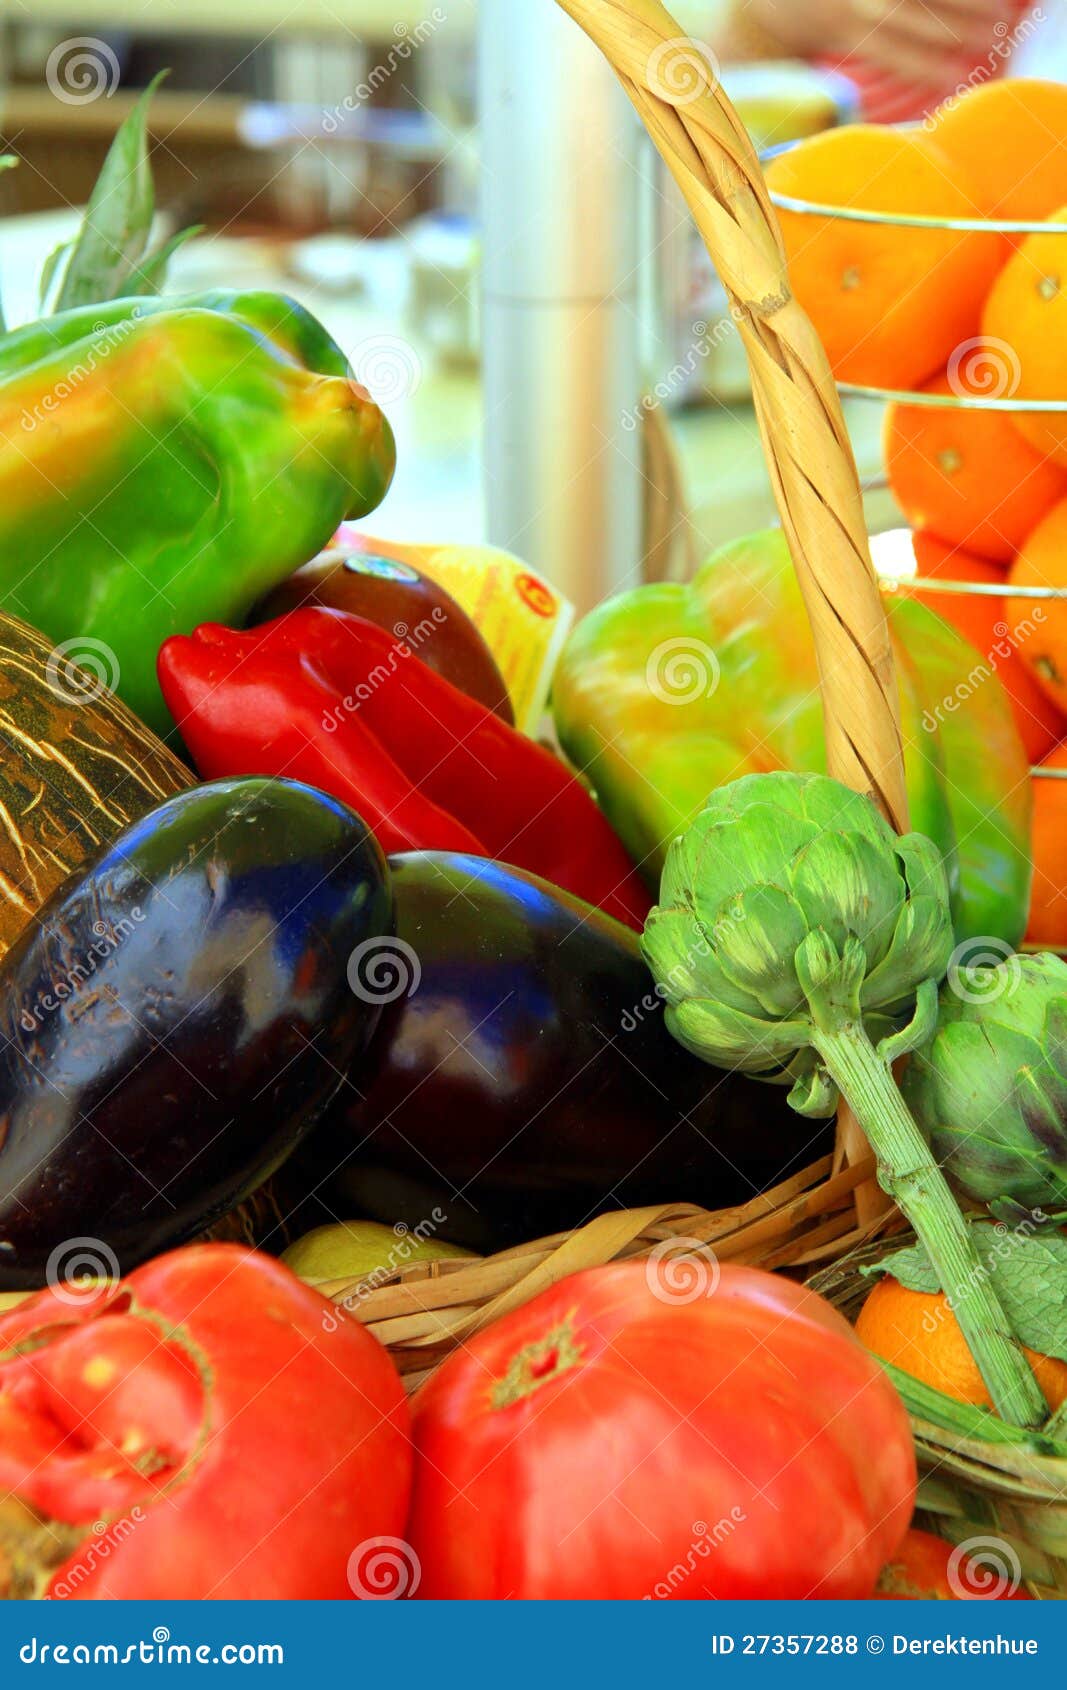 Imagen de la fruta y verdura fresca mezclada en una cesta